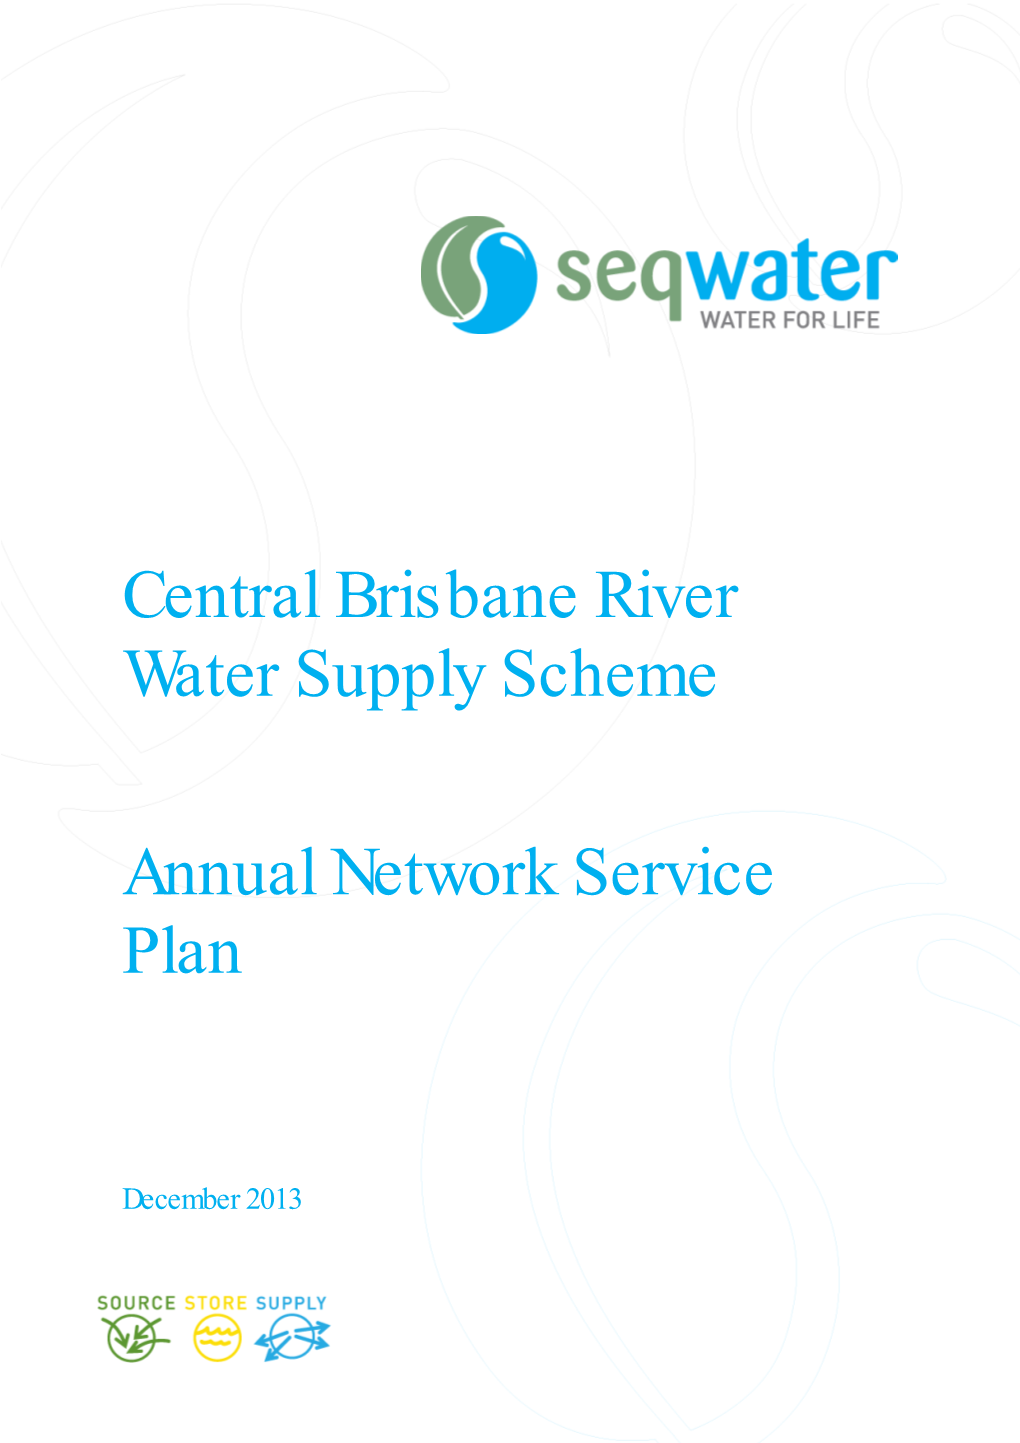 Central Brisbane River Water Supply Scheme Annual Network Service Plan